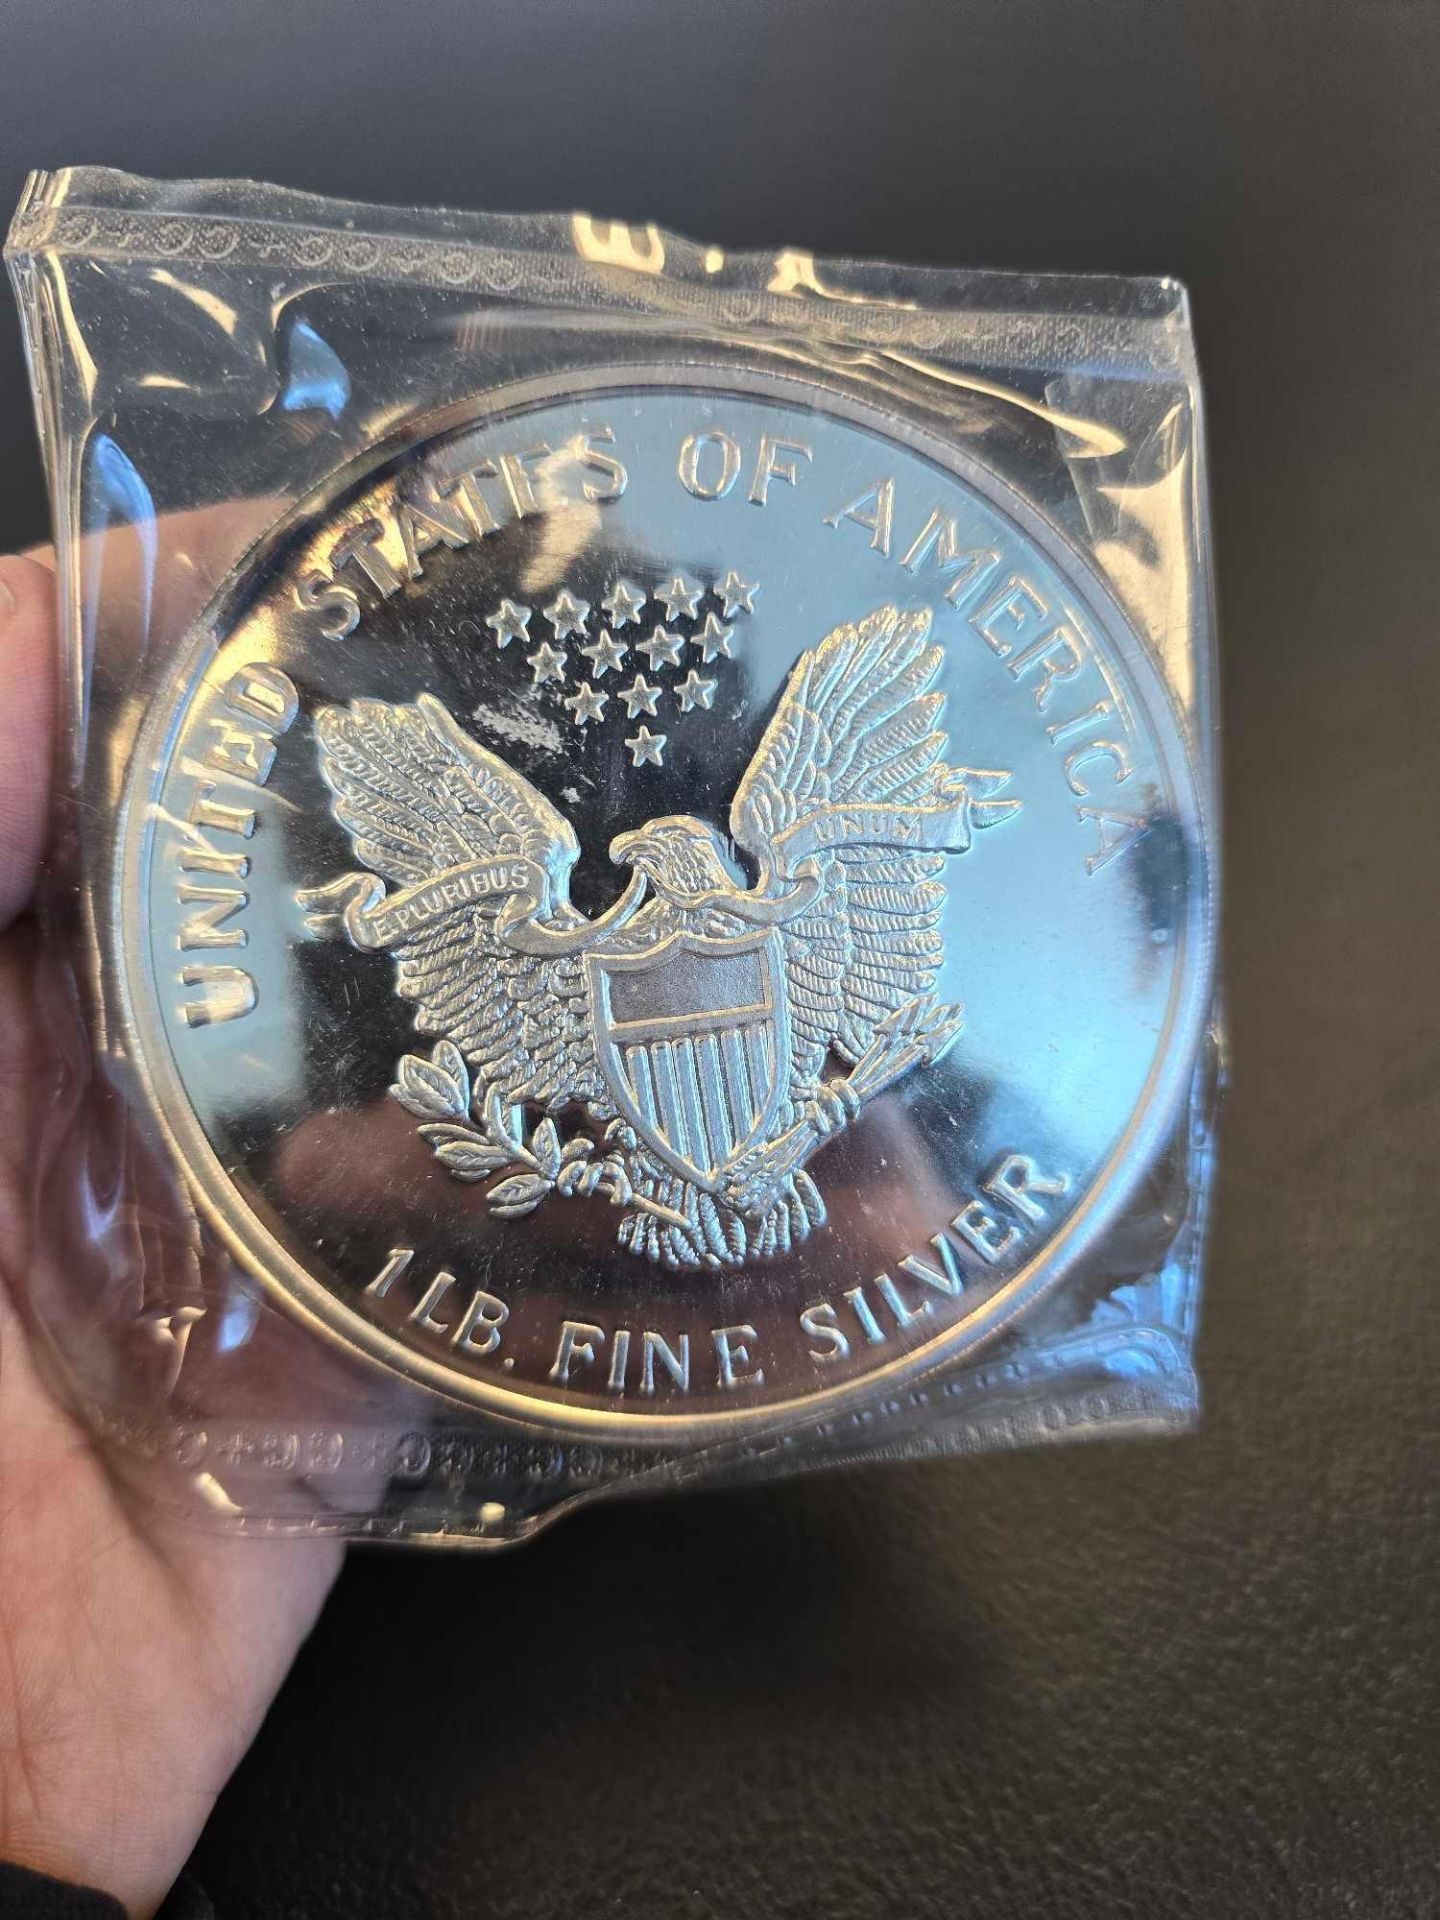 1 lb fine silver eagle coin - Image 3 of 3